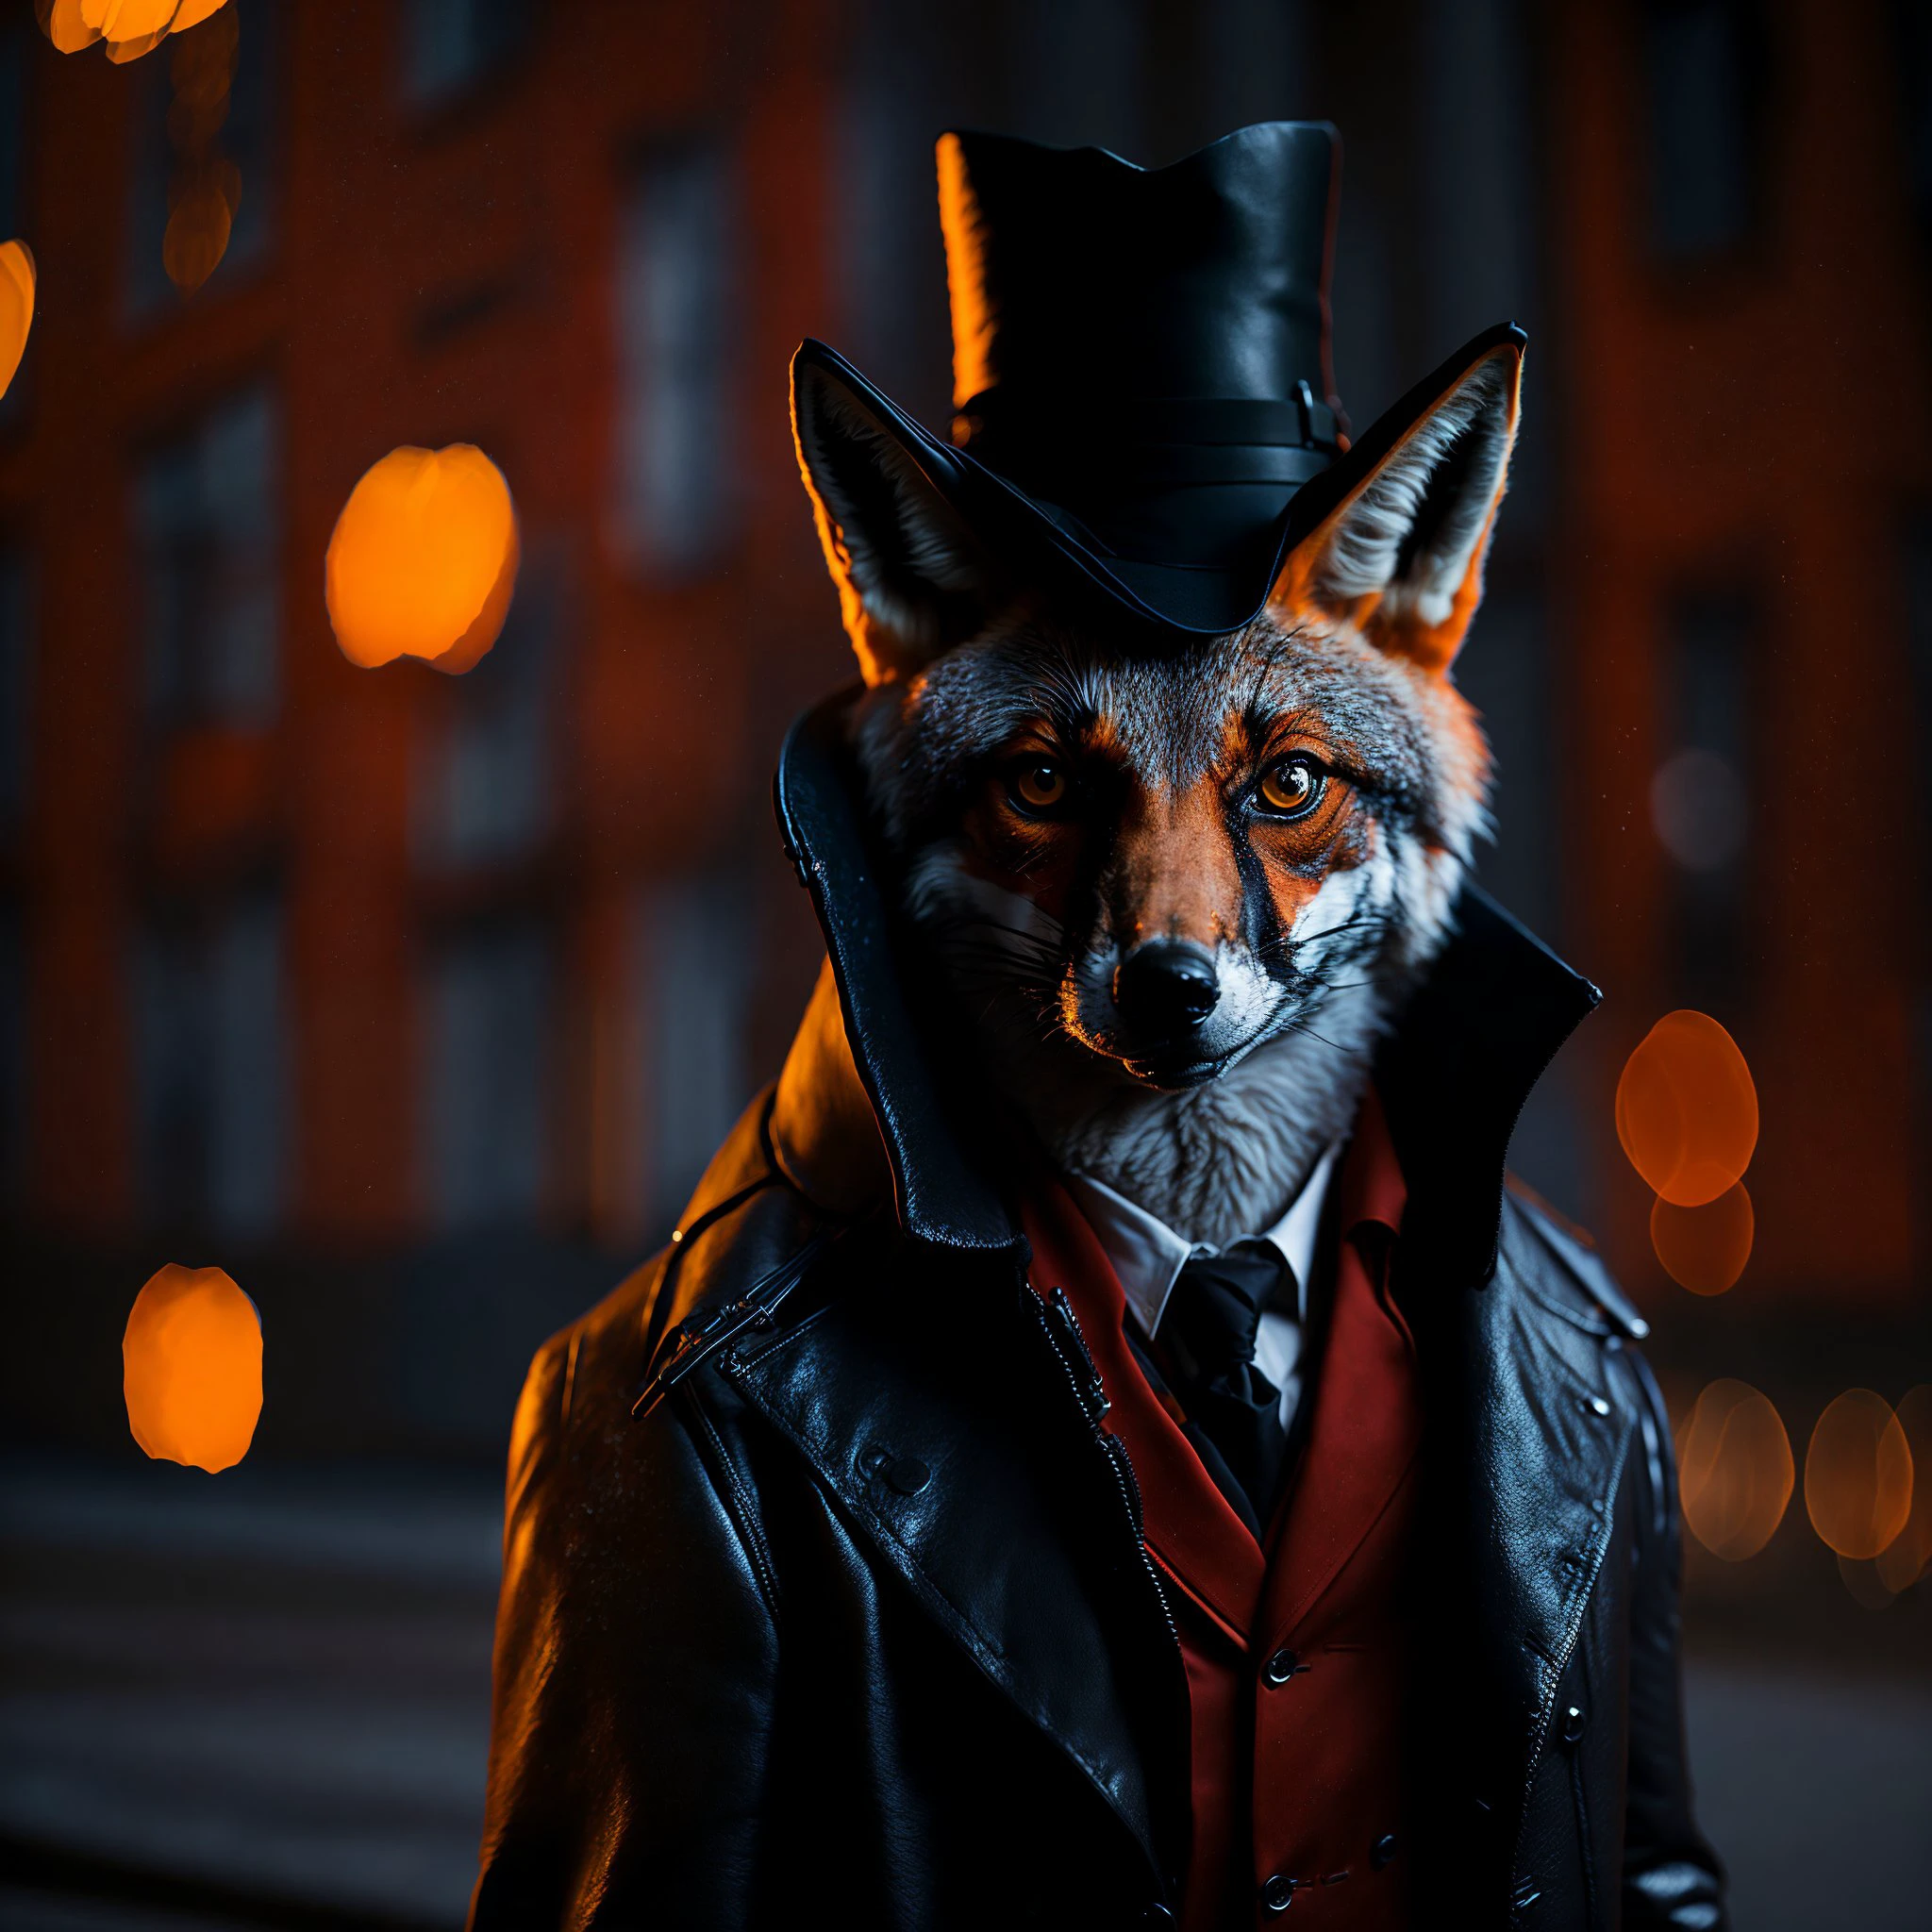 preisgekröntes Porträt eines Fuchses, der als Geheimagent verkleidet ist, auf dem Roten Platz, bokeh, Hintergrundbeleuchtung